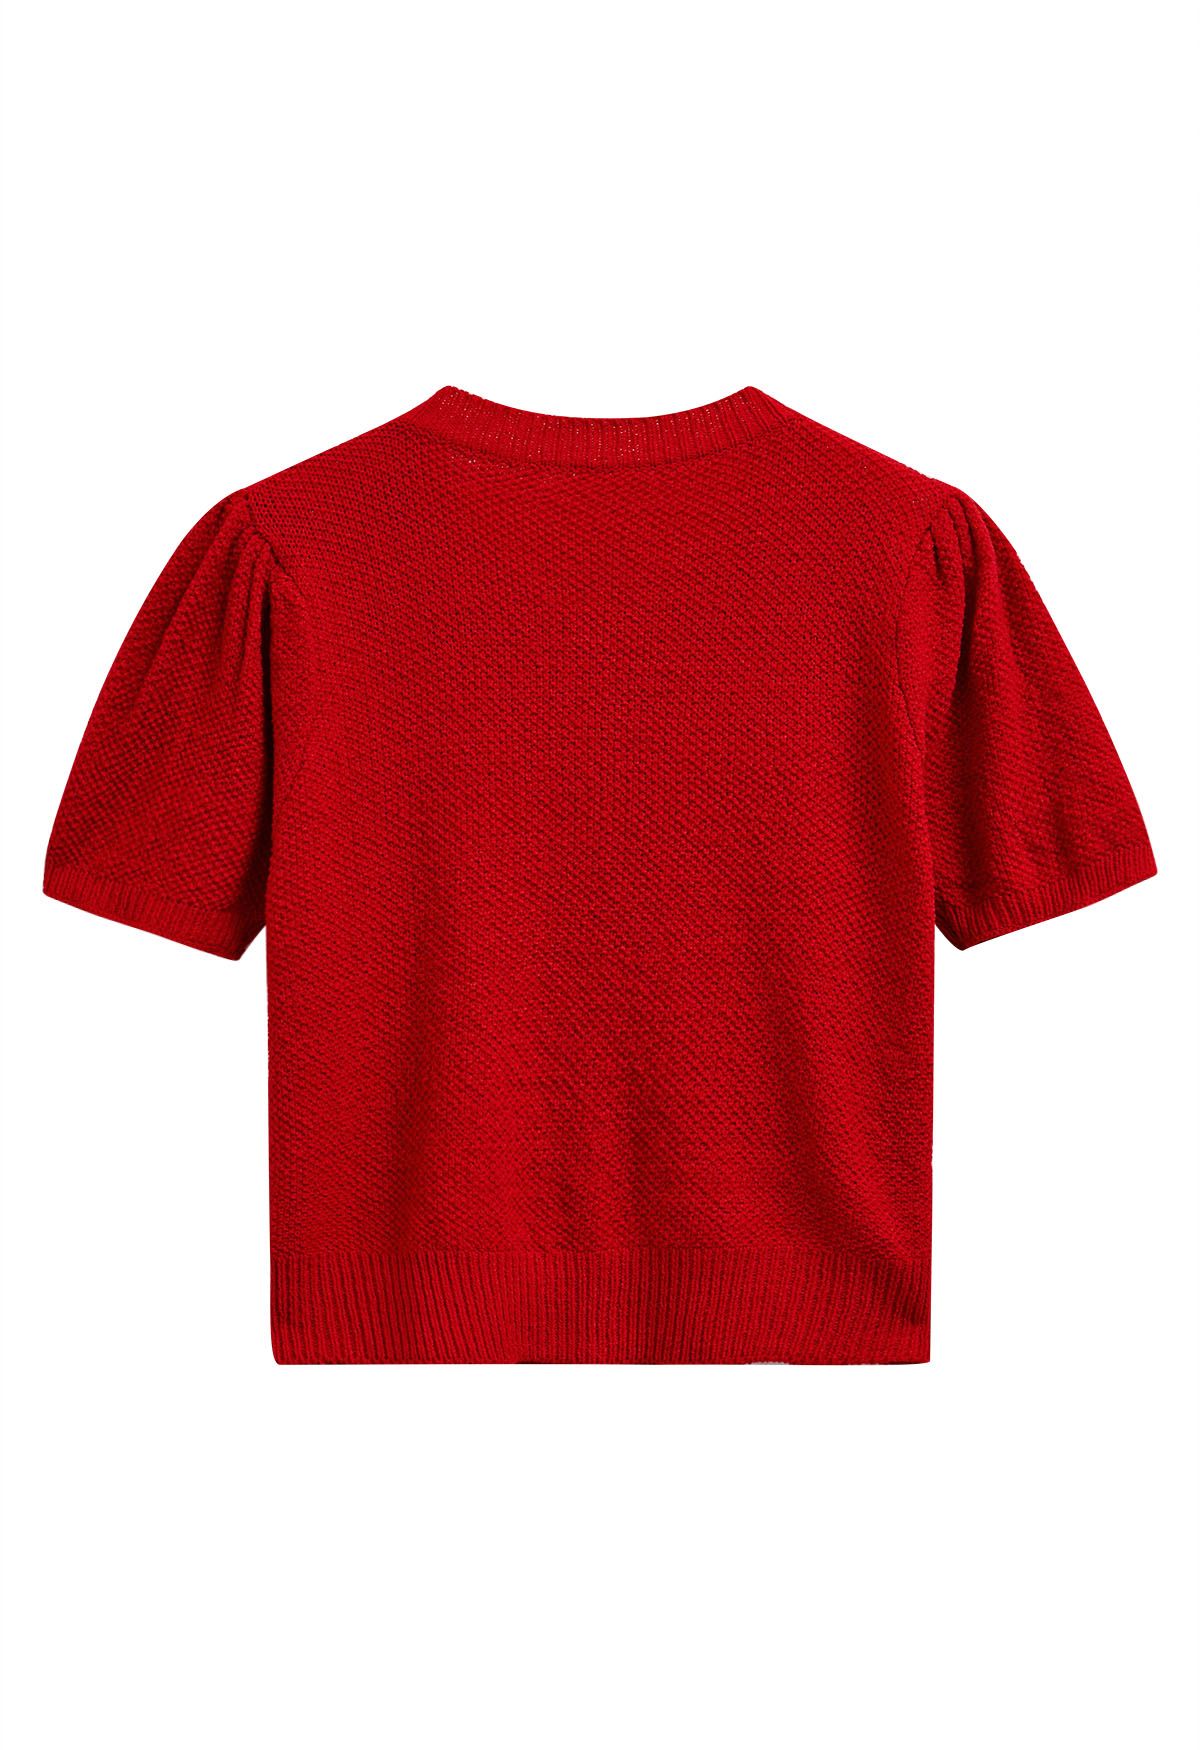 Cardigan en tricot à manches courtes orné de fleurs au crochet en rouge